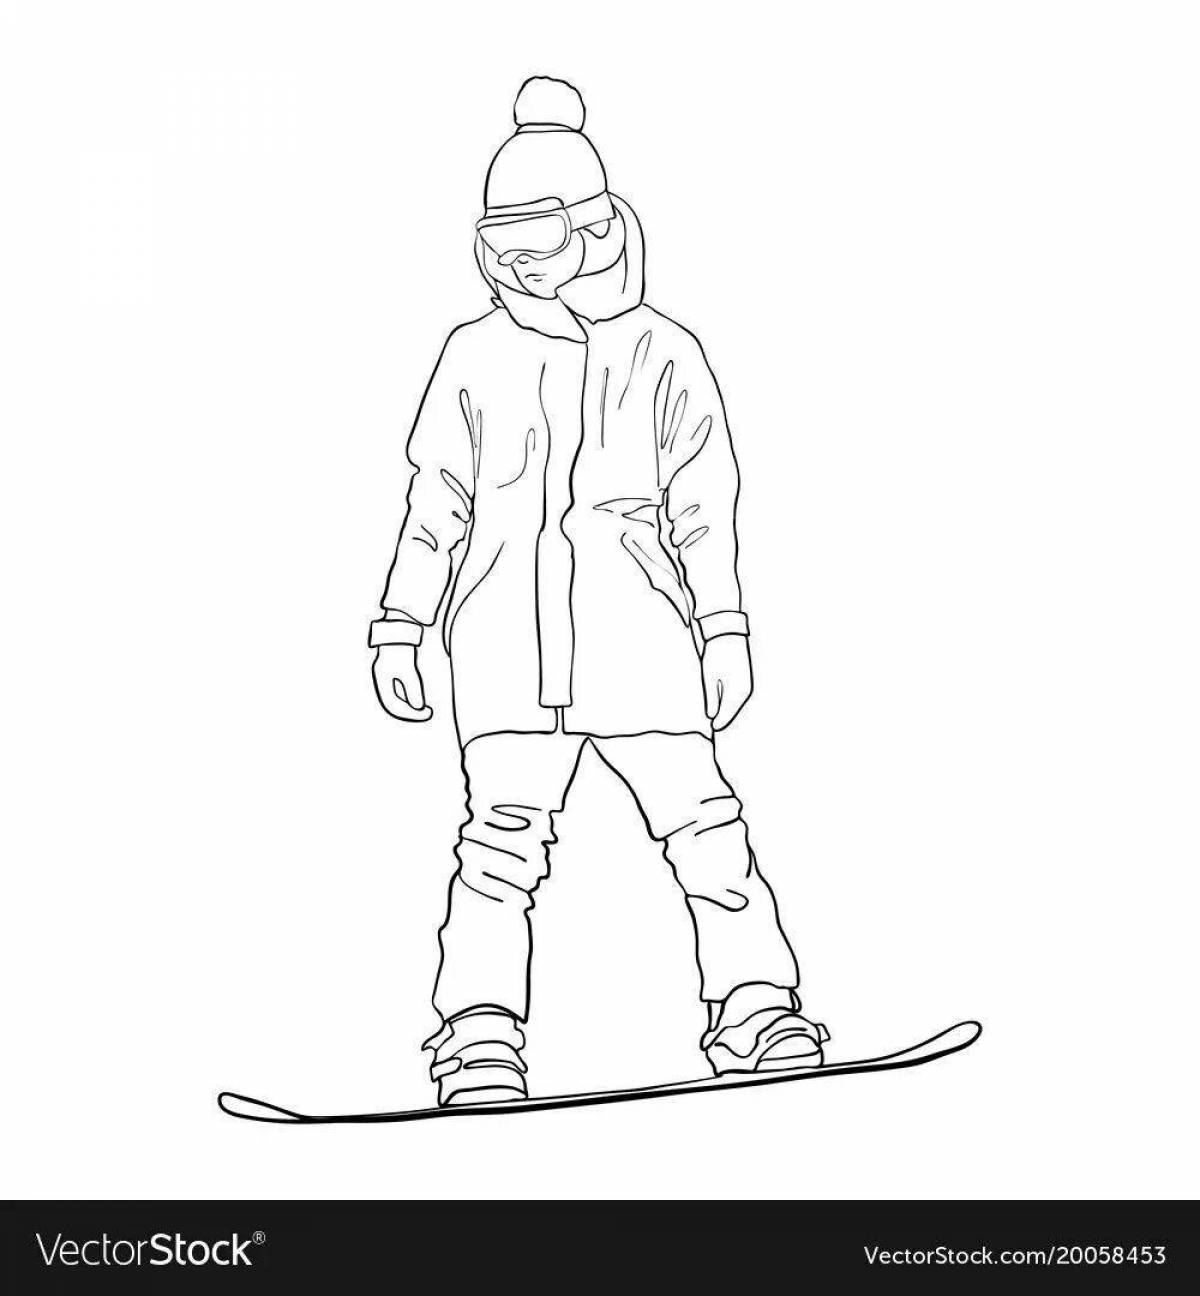 Яркая раскраска сноубордиста для детей